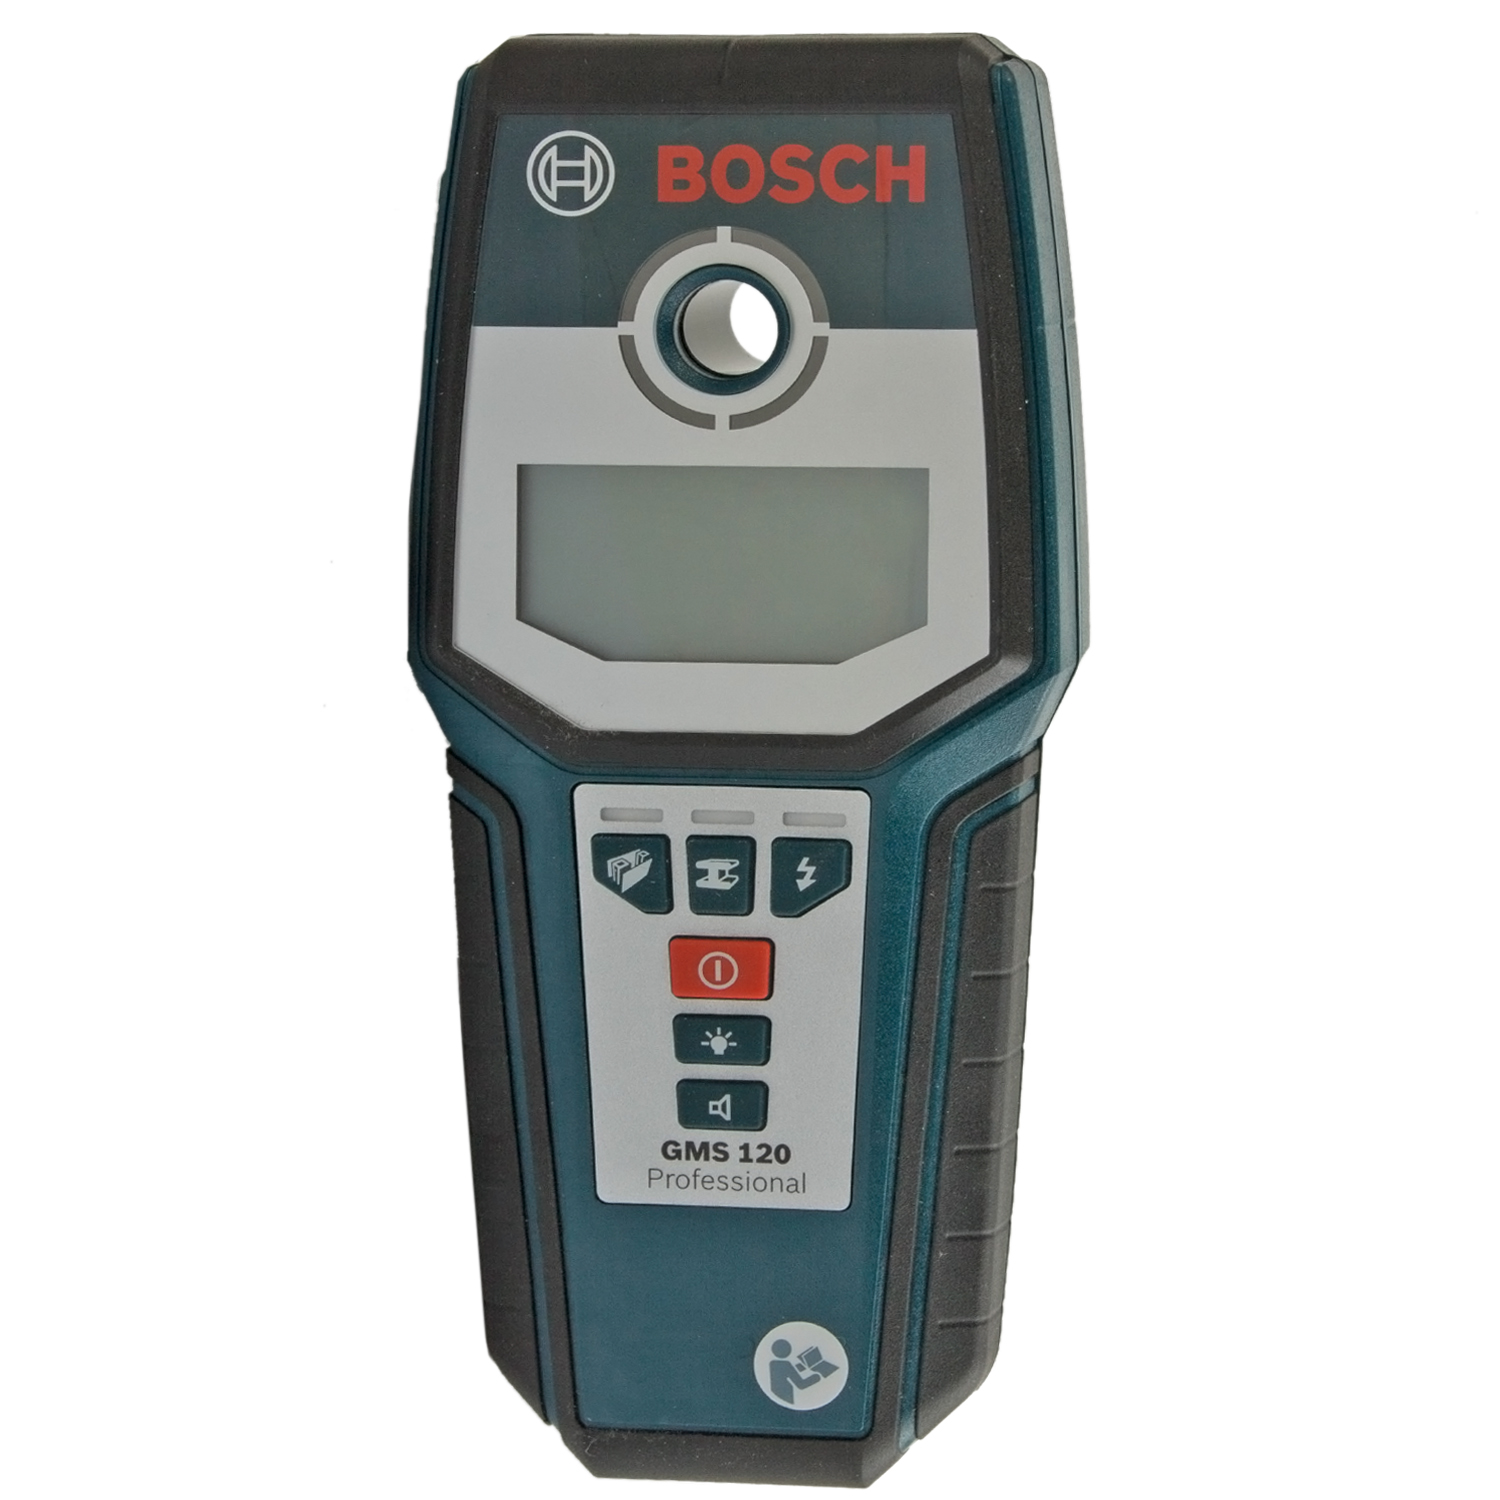 Bosch 120 детектор. Детектор Bosch GMS 120. Детектор металла Bosch GMS 120 Prof. Bosch professional gms120prof. Детектор скрытой проводки Bosch GMS 120.